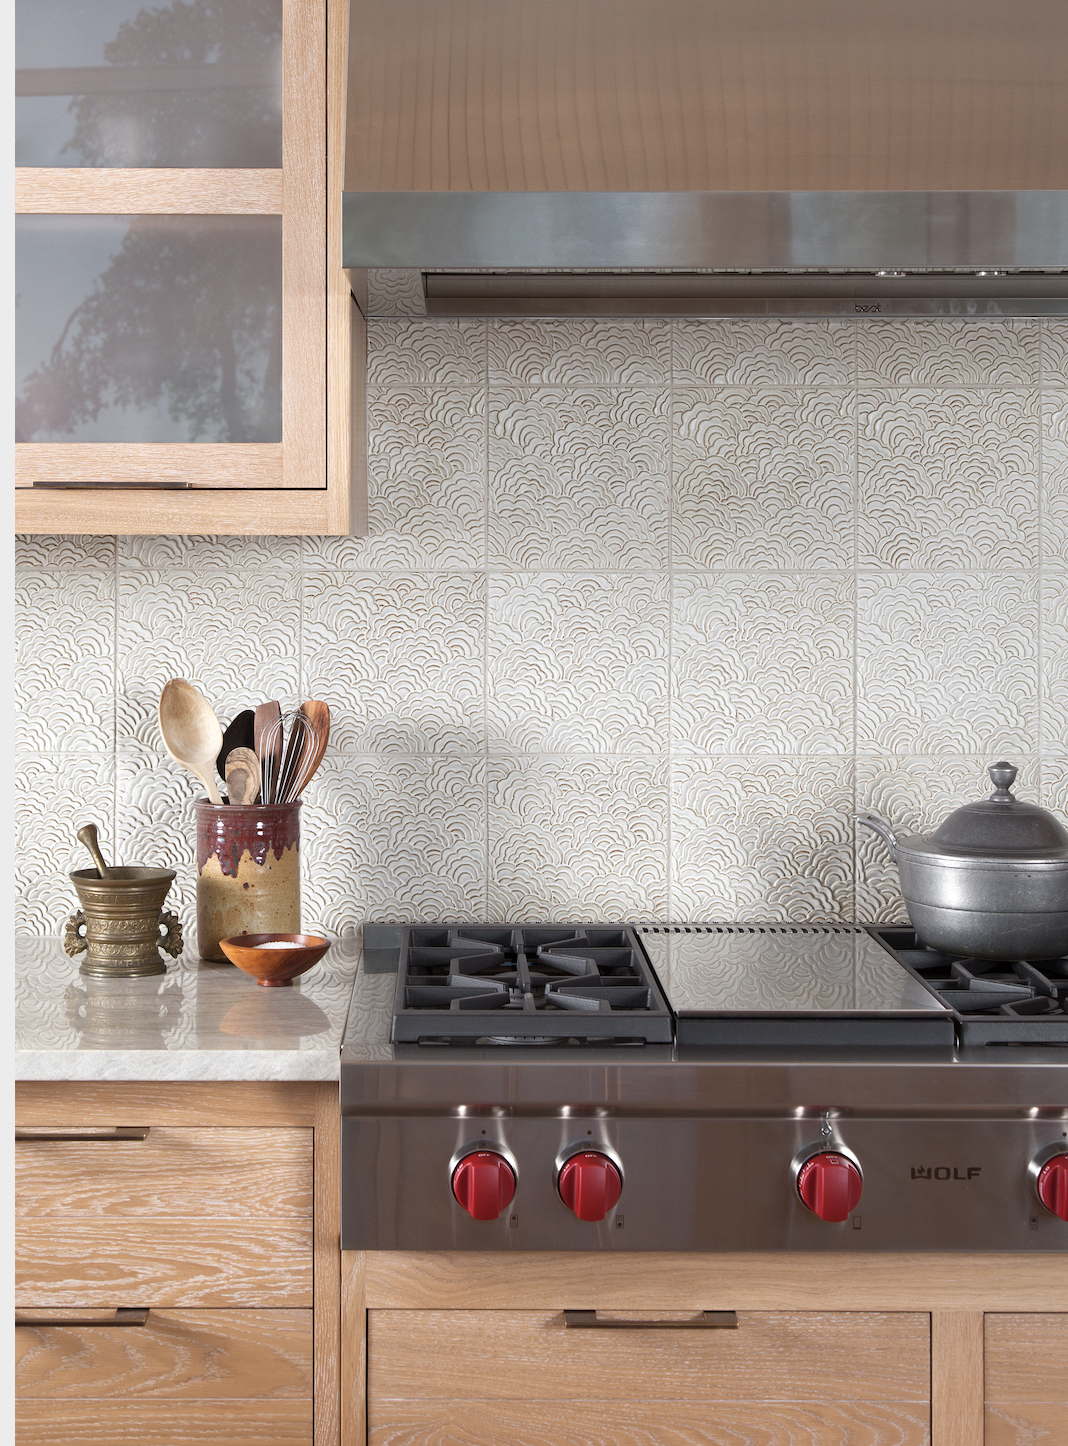 Best Kitchen Backsplash Ideas 18   Tile Designs for Kitchens